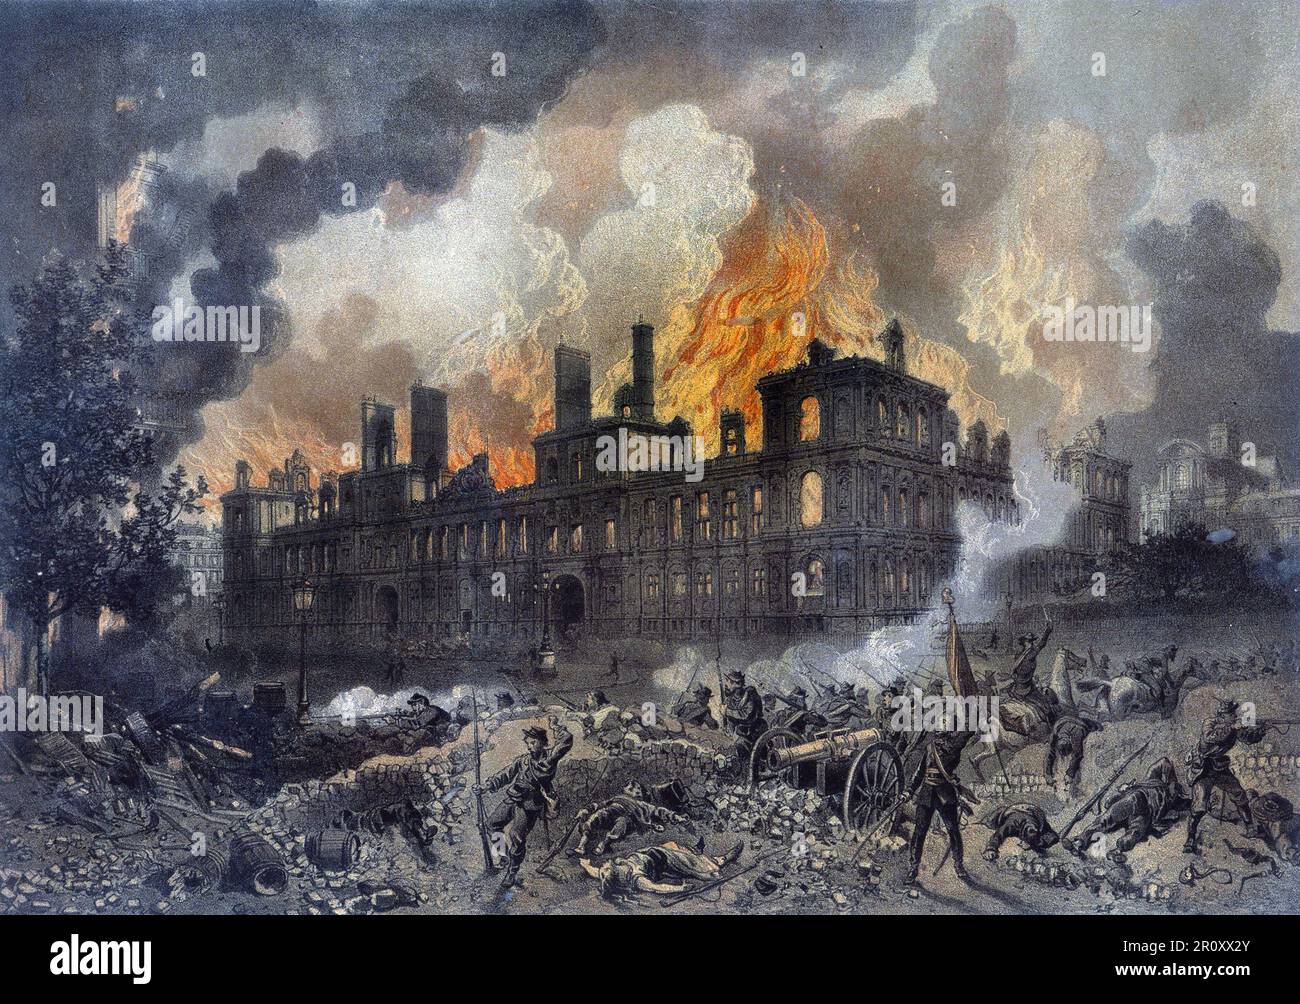 Commune de Paris : L'incendie de l'Hotel de ville de Paris le 24 Mai 1871. Gravure de l'Epoque. Stockfoto